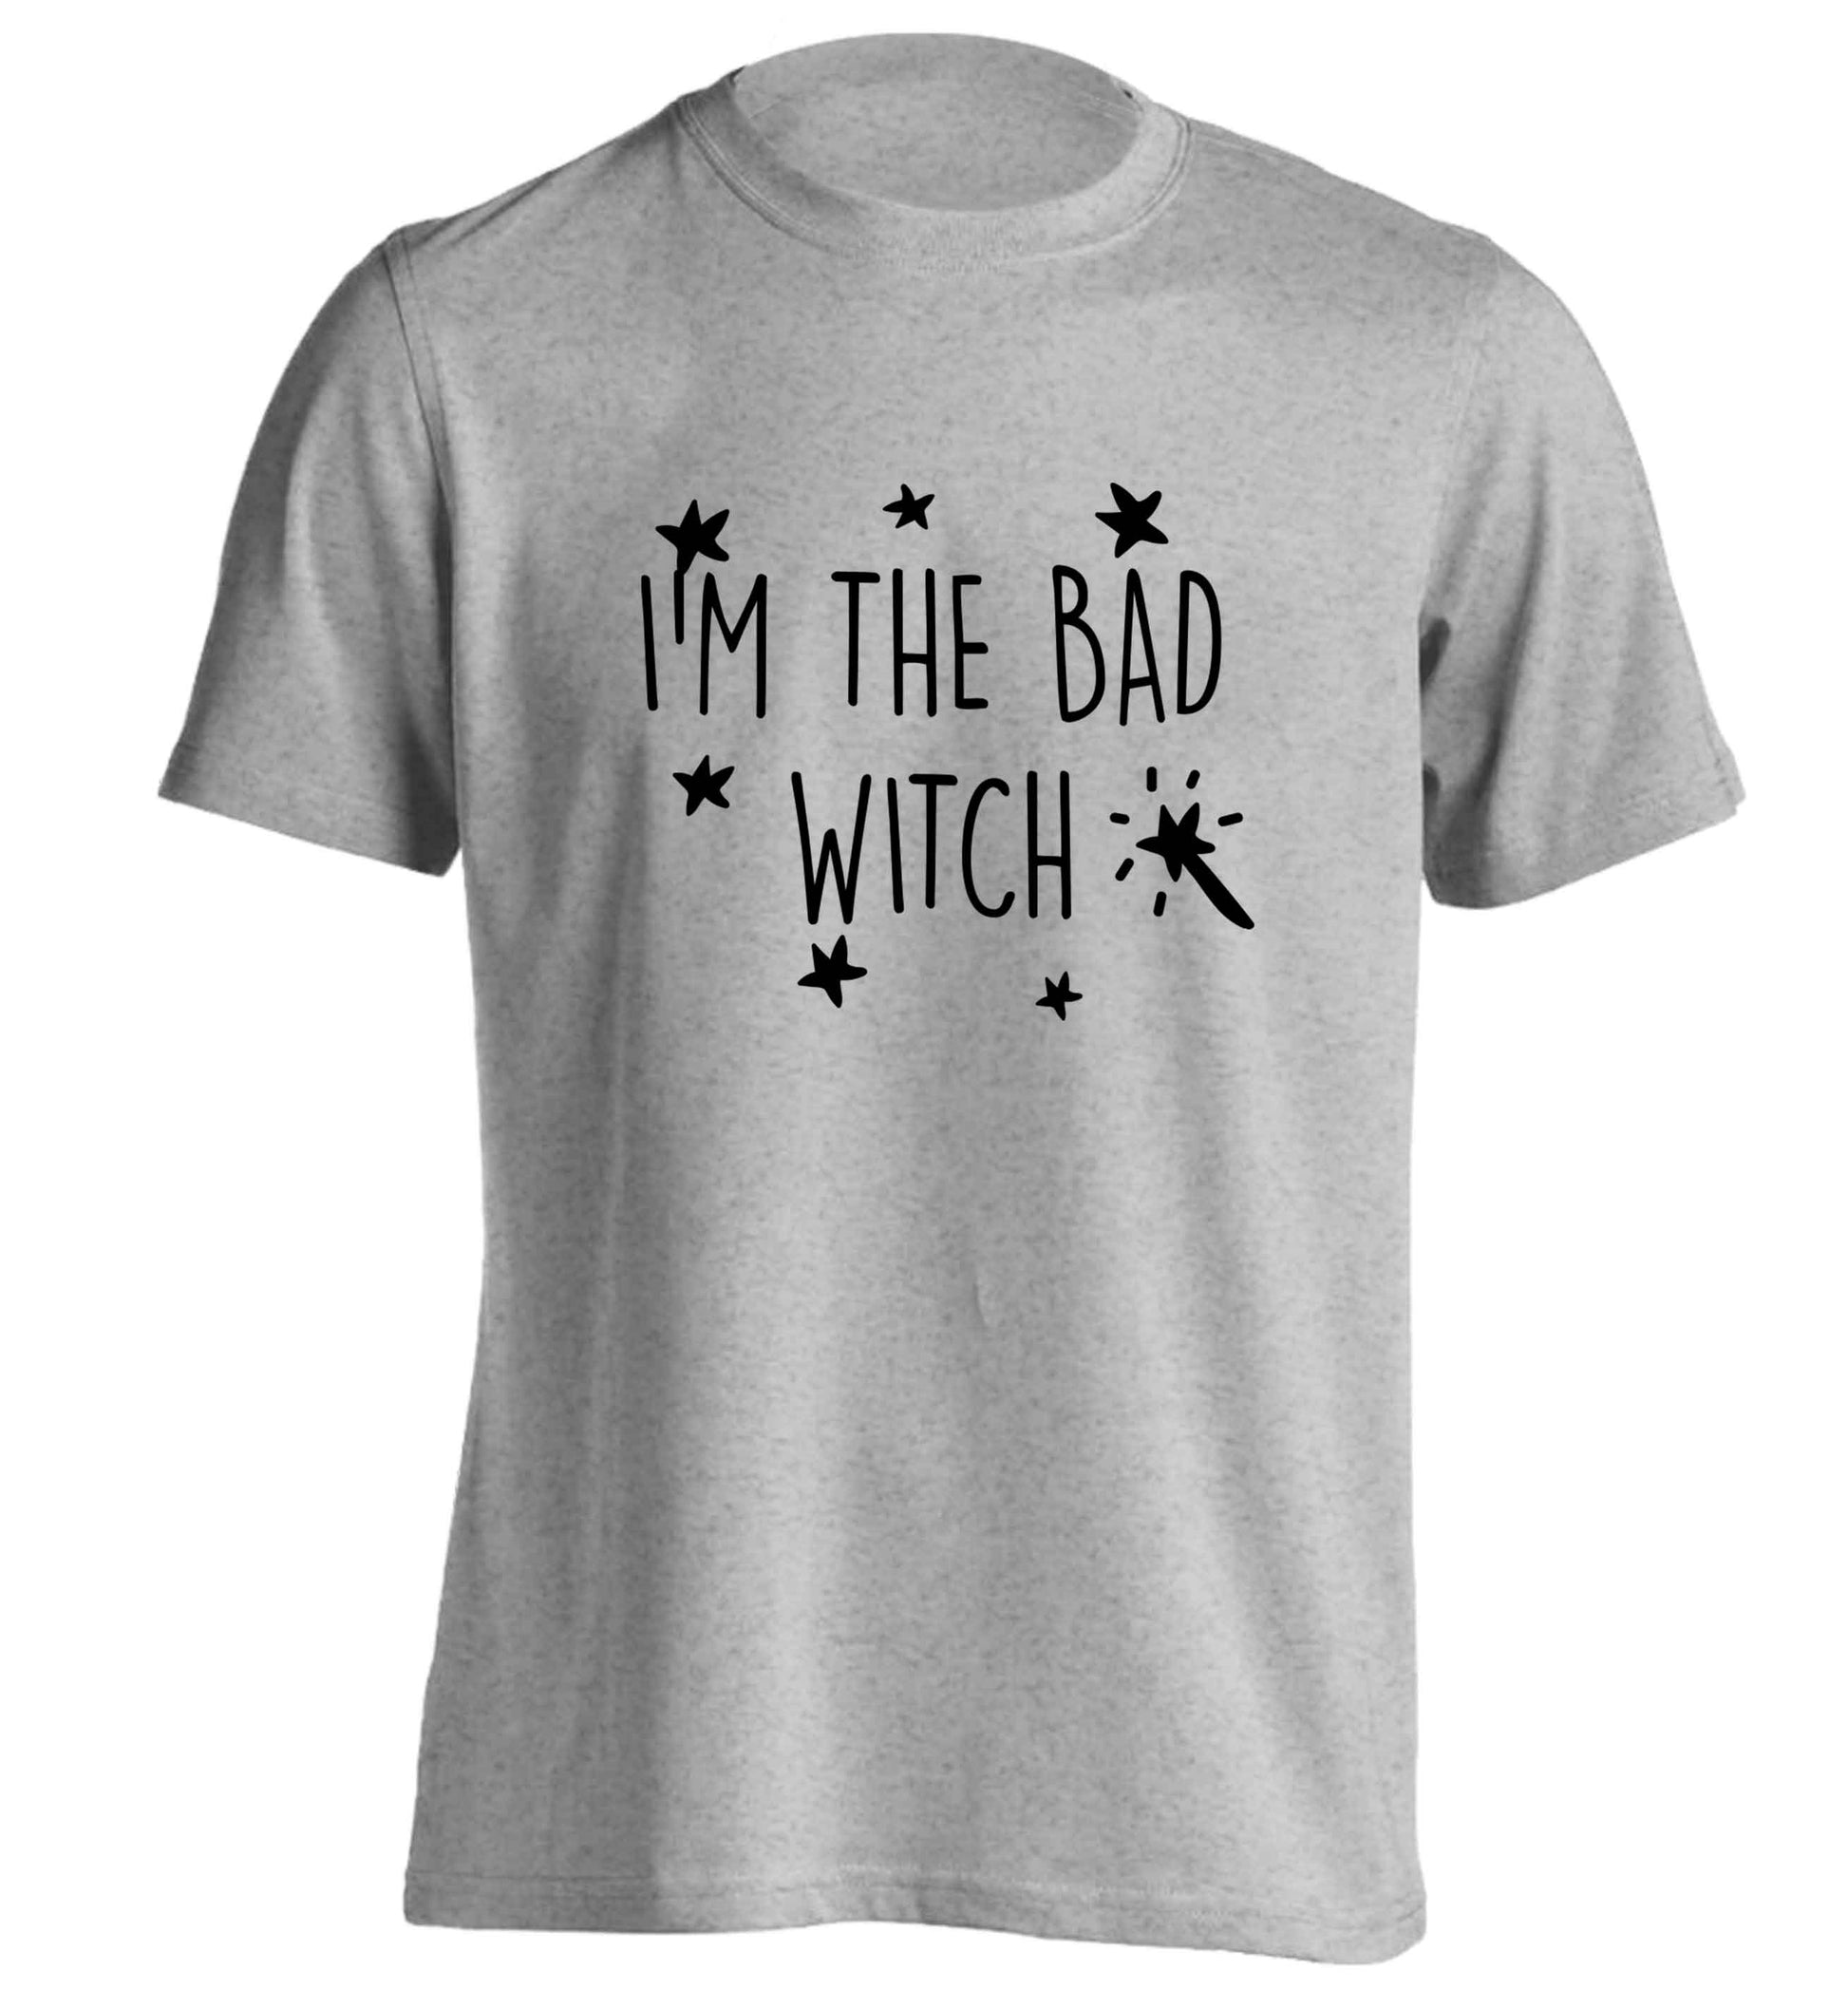 Bad witch adults unisex grey Tshirt 2XL